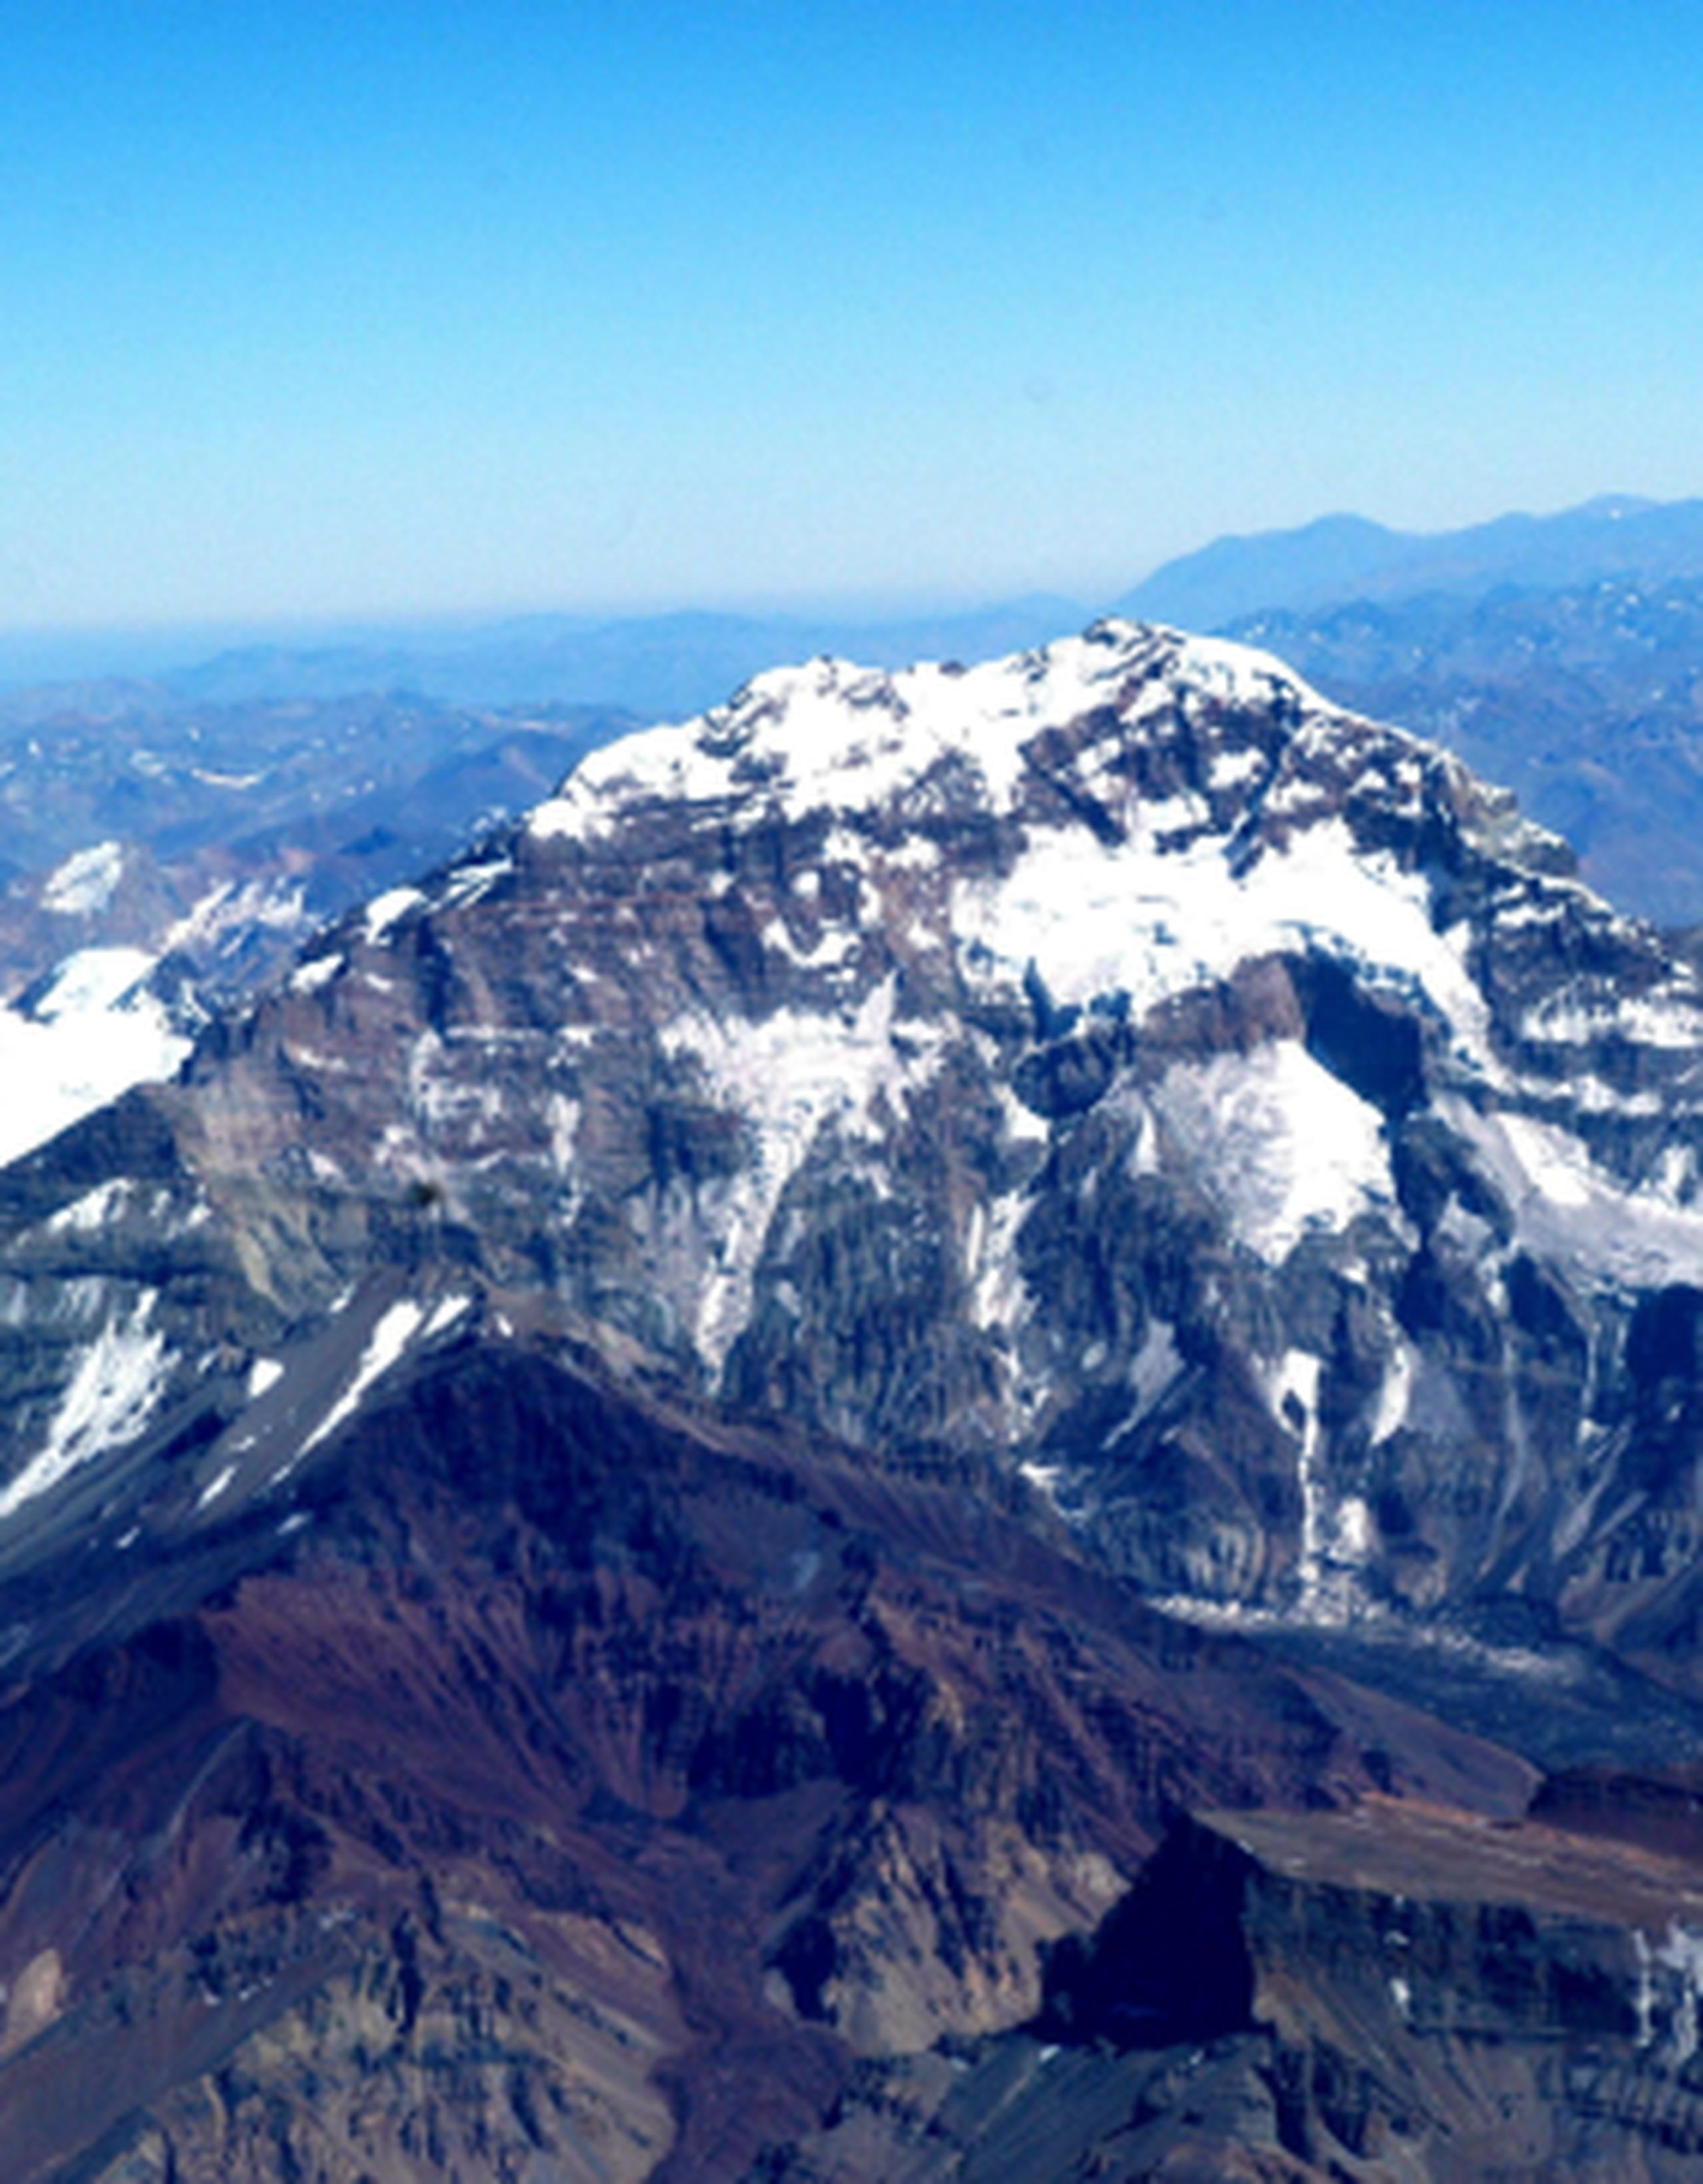 El cerro Aconcagua, es el pico más alto de América con una altura de 6,959 metro, ubicacado en la provincia argentina de Mendoza. (Archivo)